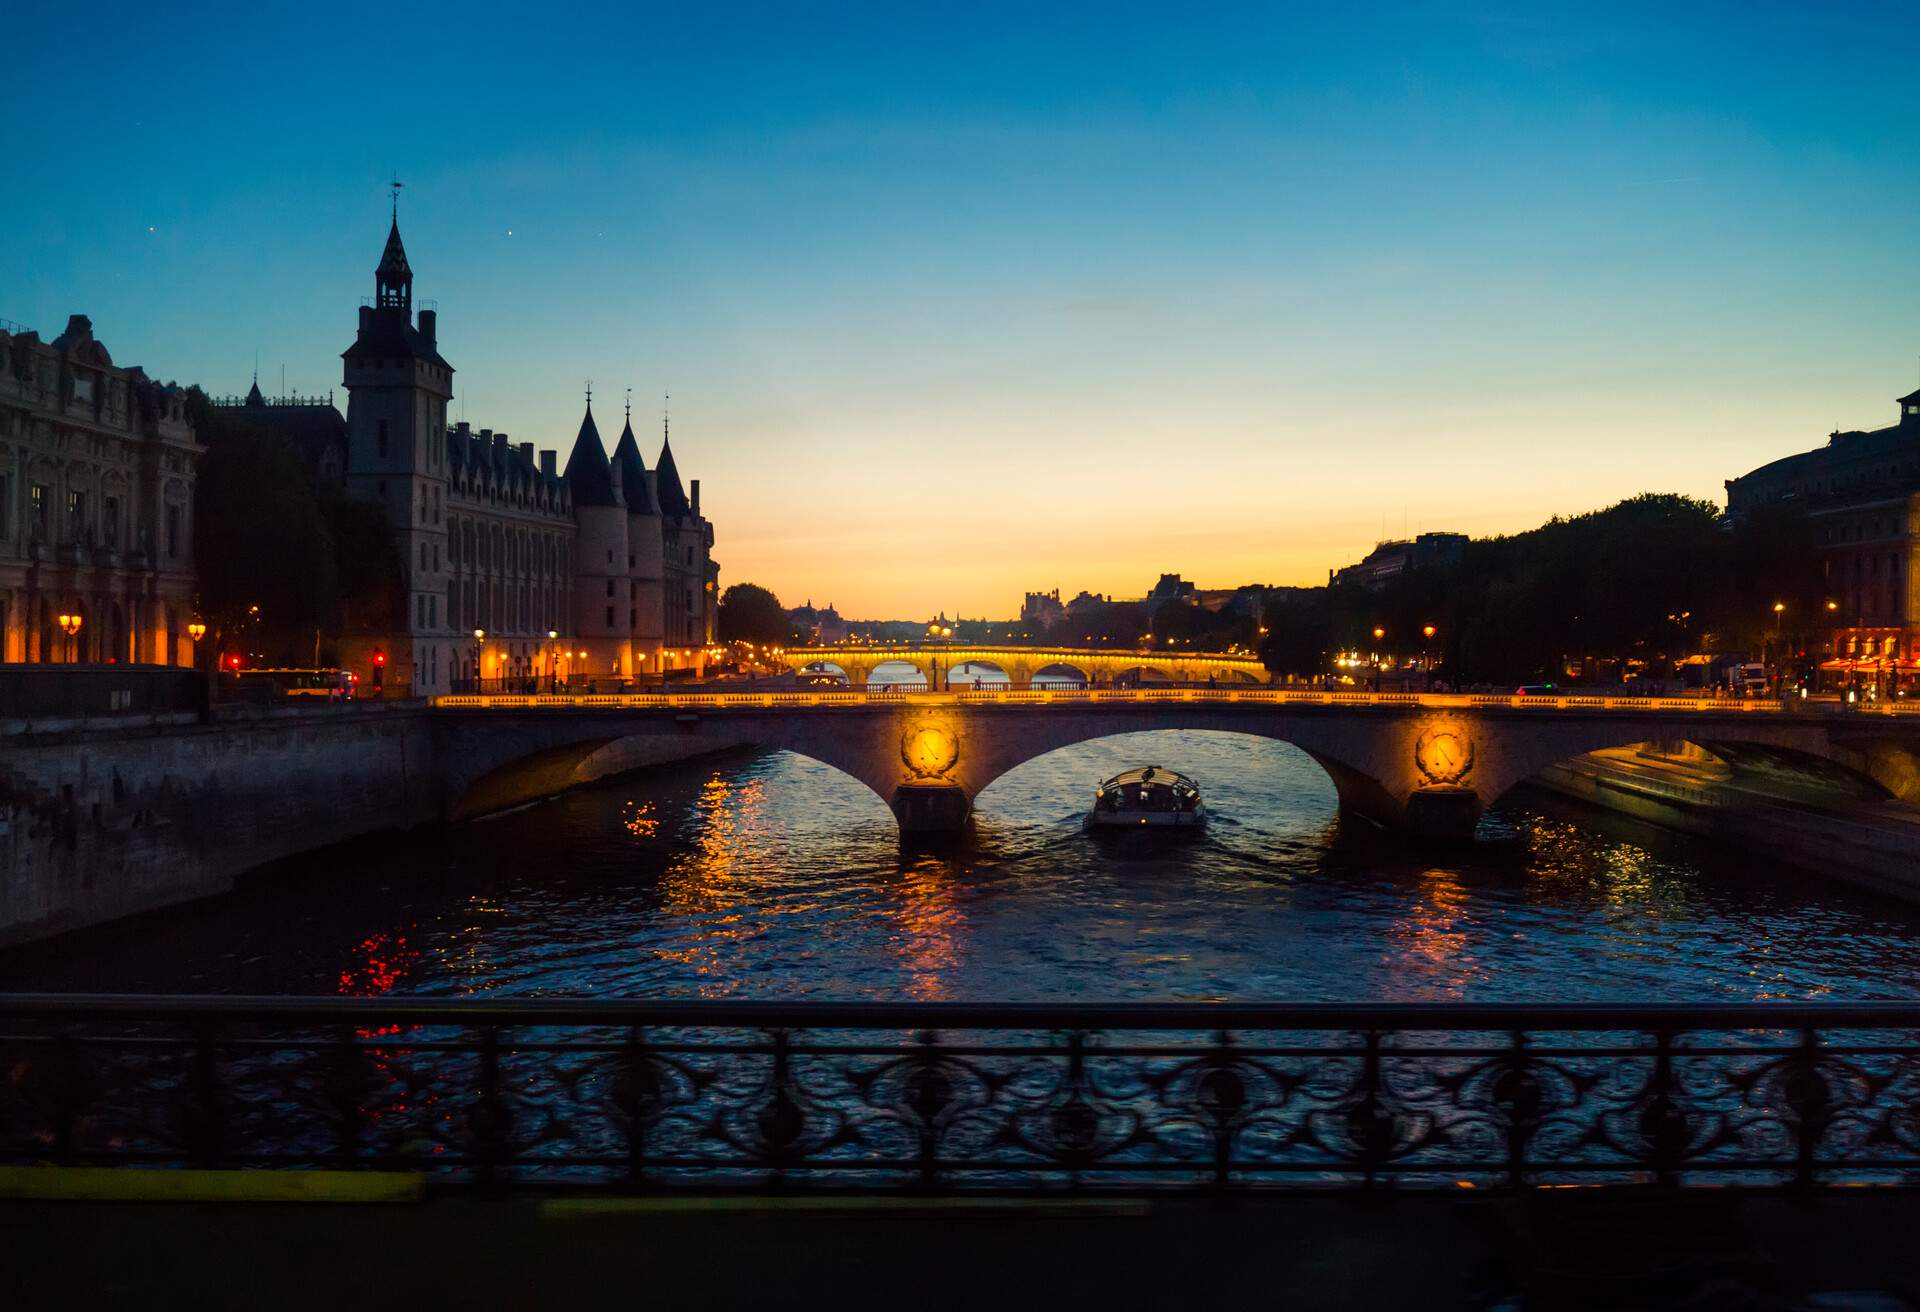 The Concierge, Pont au Change and River Seine, Paris France..Paris by night